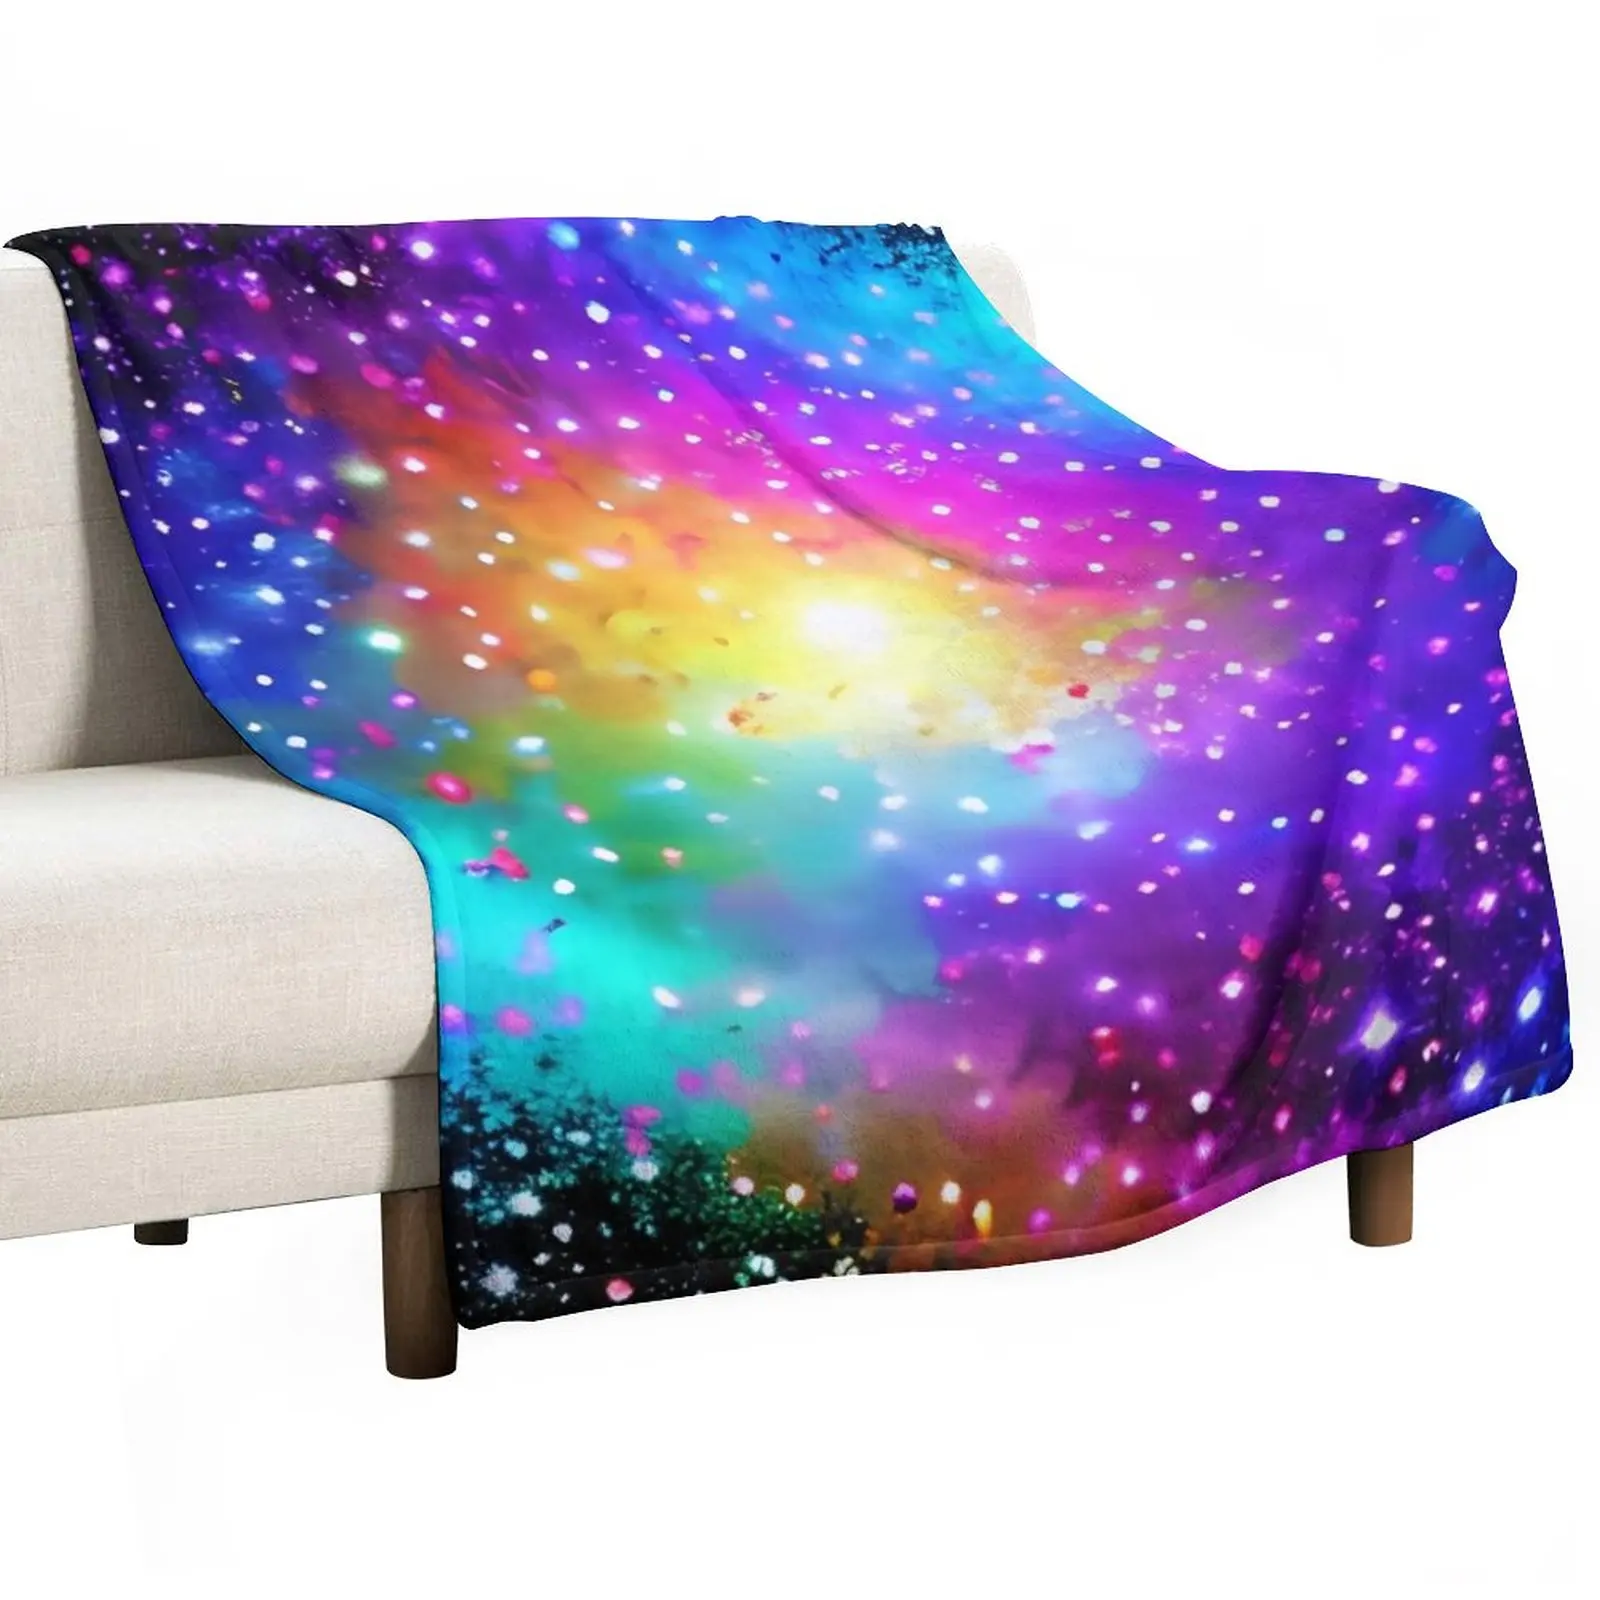 

Радужный Галактический искусство плед одеяло персонализированный подарок Диван Одеяло спальный мешок одеяло